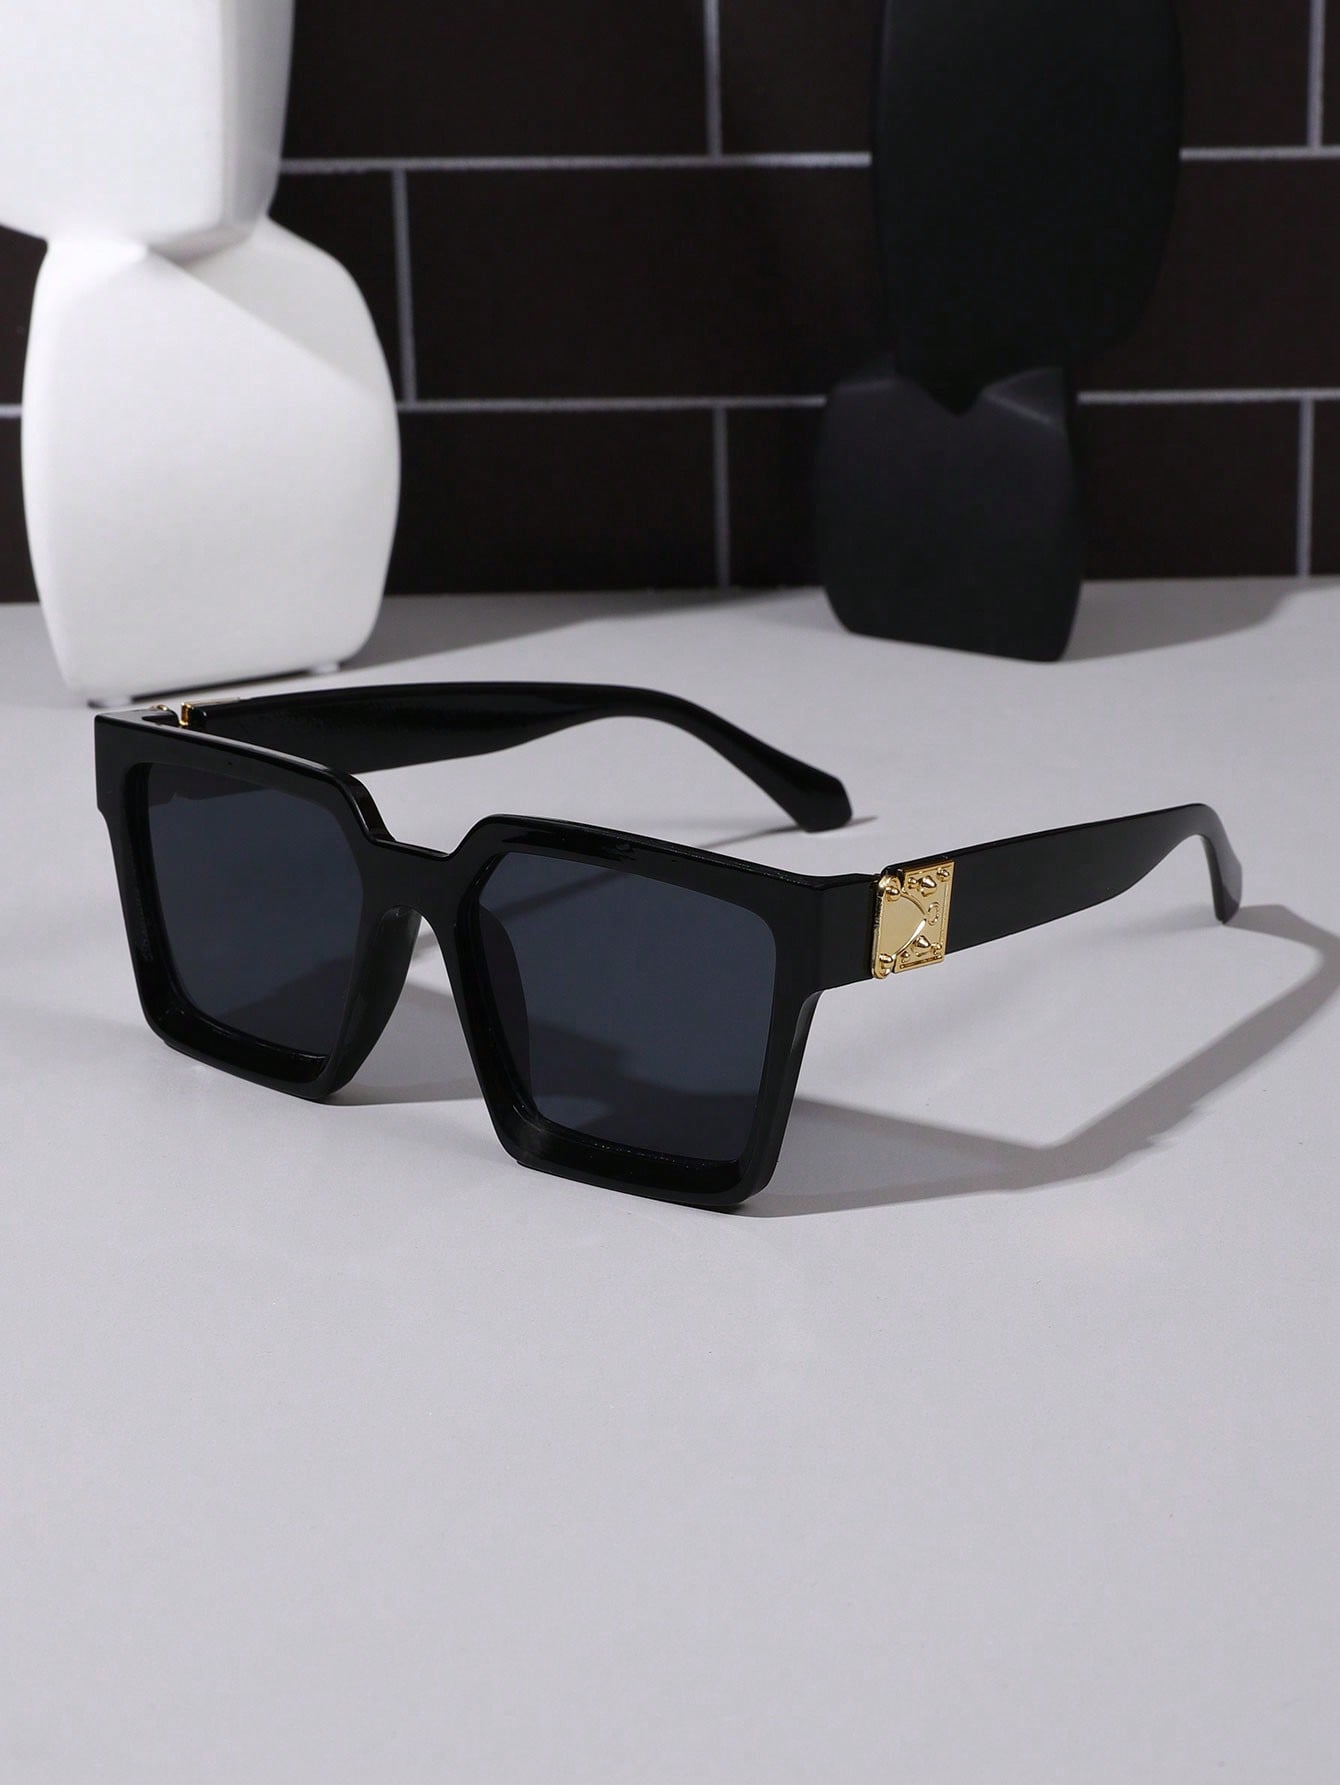 1шт Модные большие квадратные солнцезащитные очки в стиле ретро для женщин с текстурой цена и фото